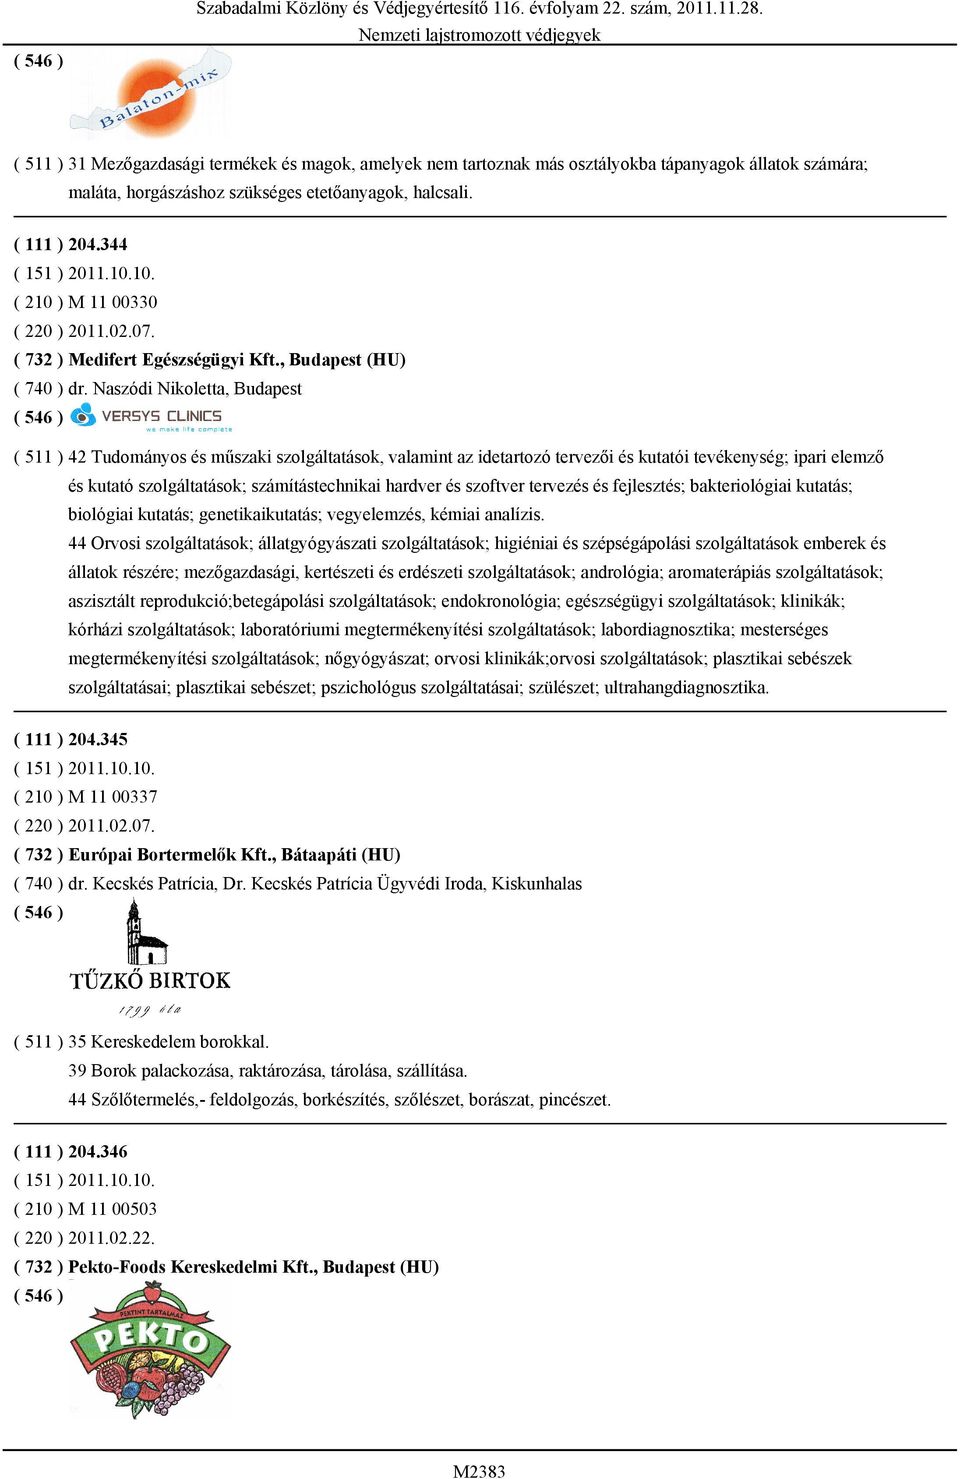 Naszódi Nikoletta, Budapest ( 511 ) 42 Tudományos és műszaki szolgáltatások, valamint az idetartozó tervezői és kutatói tevékenység; ipari elemző és kutató szolgáltatások; számítástechnikai hardver